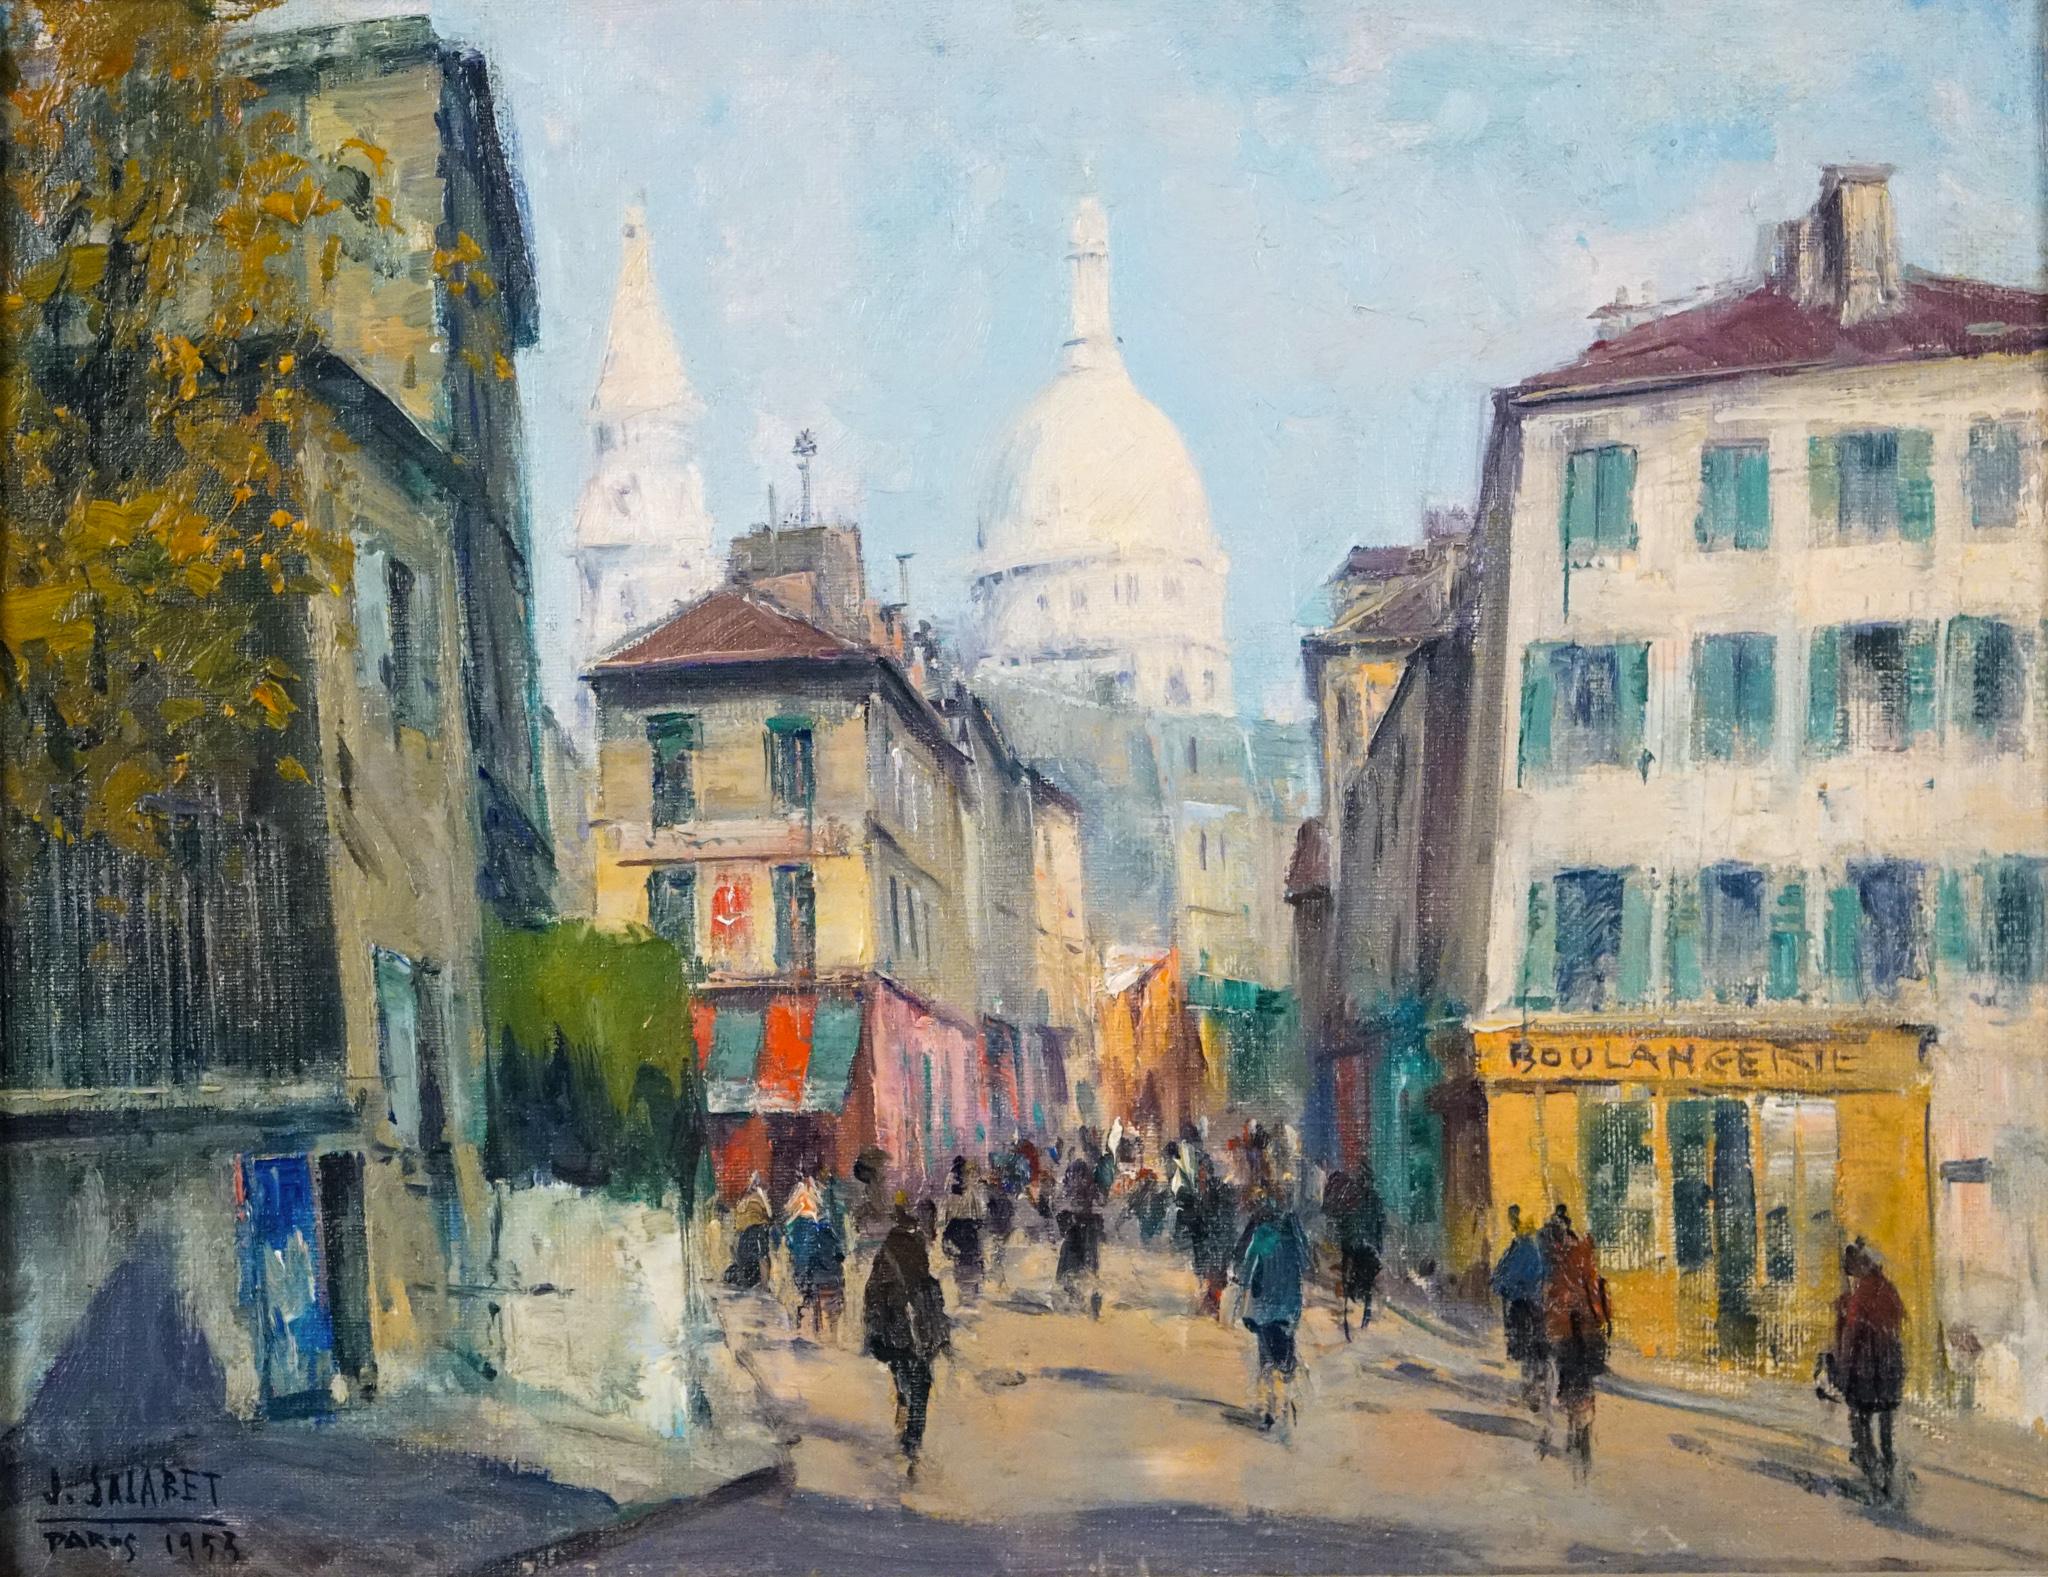 VUE DU SACRE COEUR - MONTMARTRE, PARIS – Painting von Jean Salabet